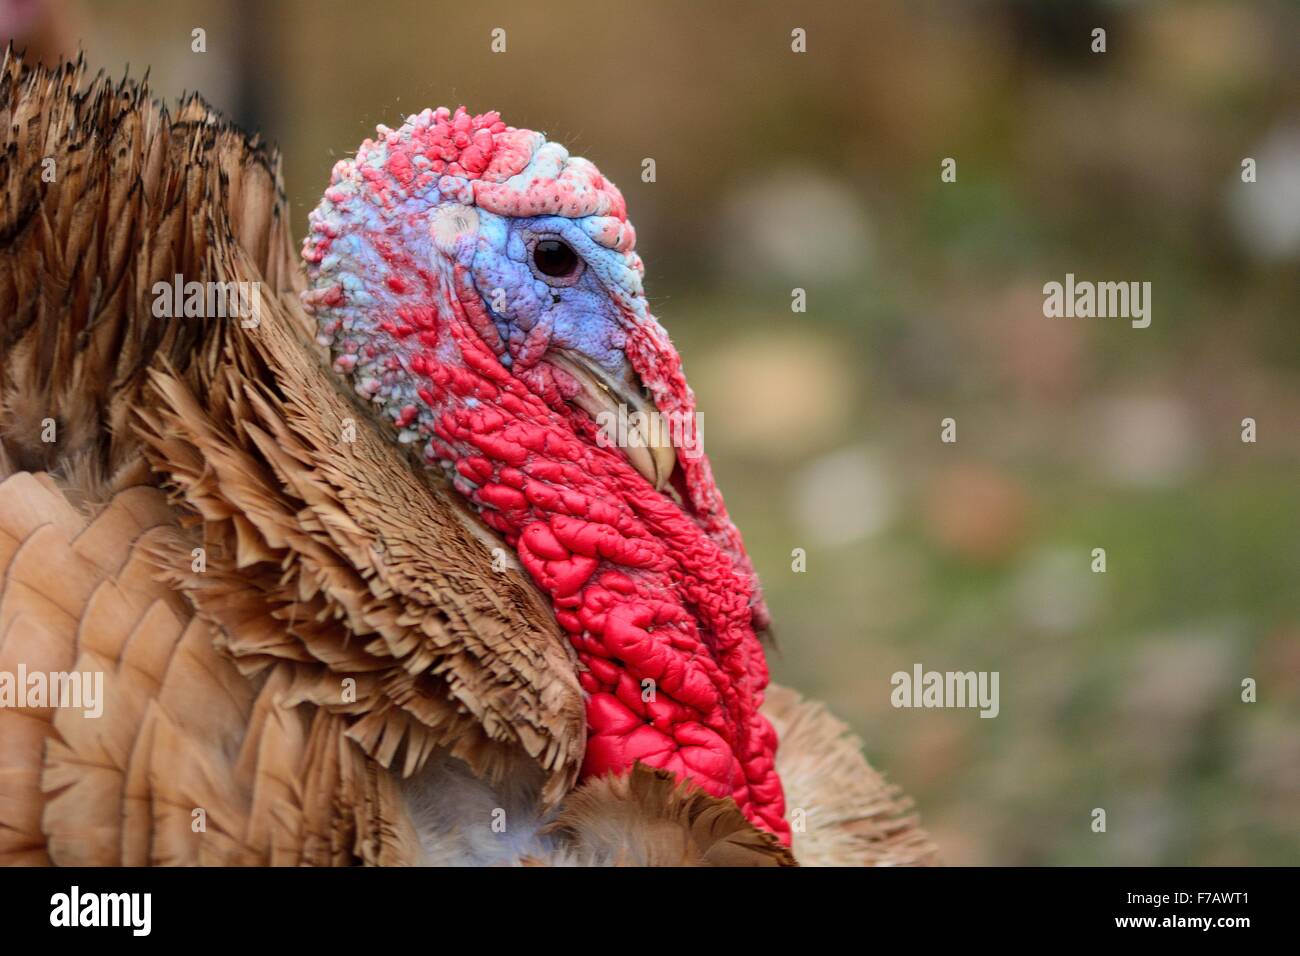 La Turchia bird in testa che mostra il profilo di colore rosso brillante e blu snood Foto Stock